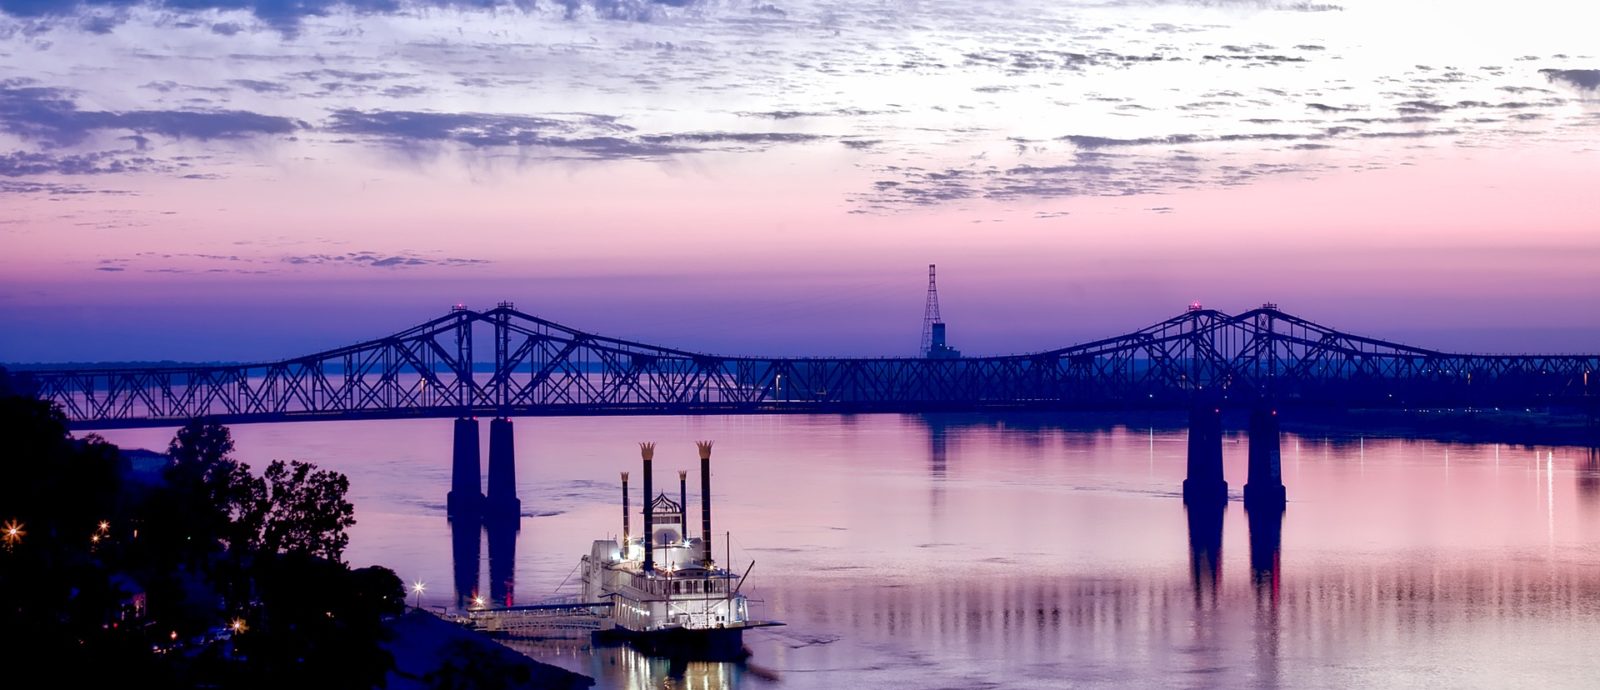 The Mississippi River. Source: Pixabay